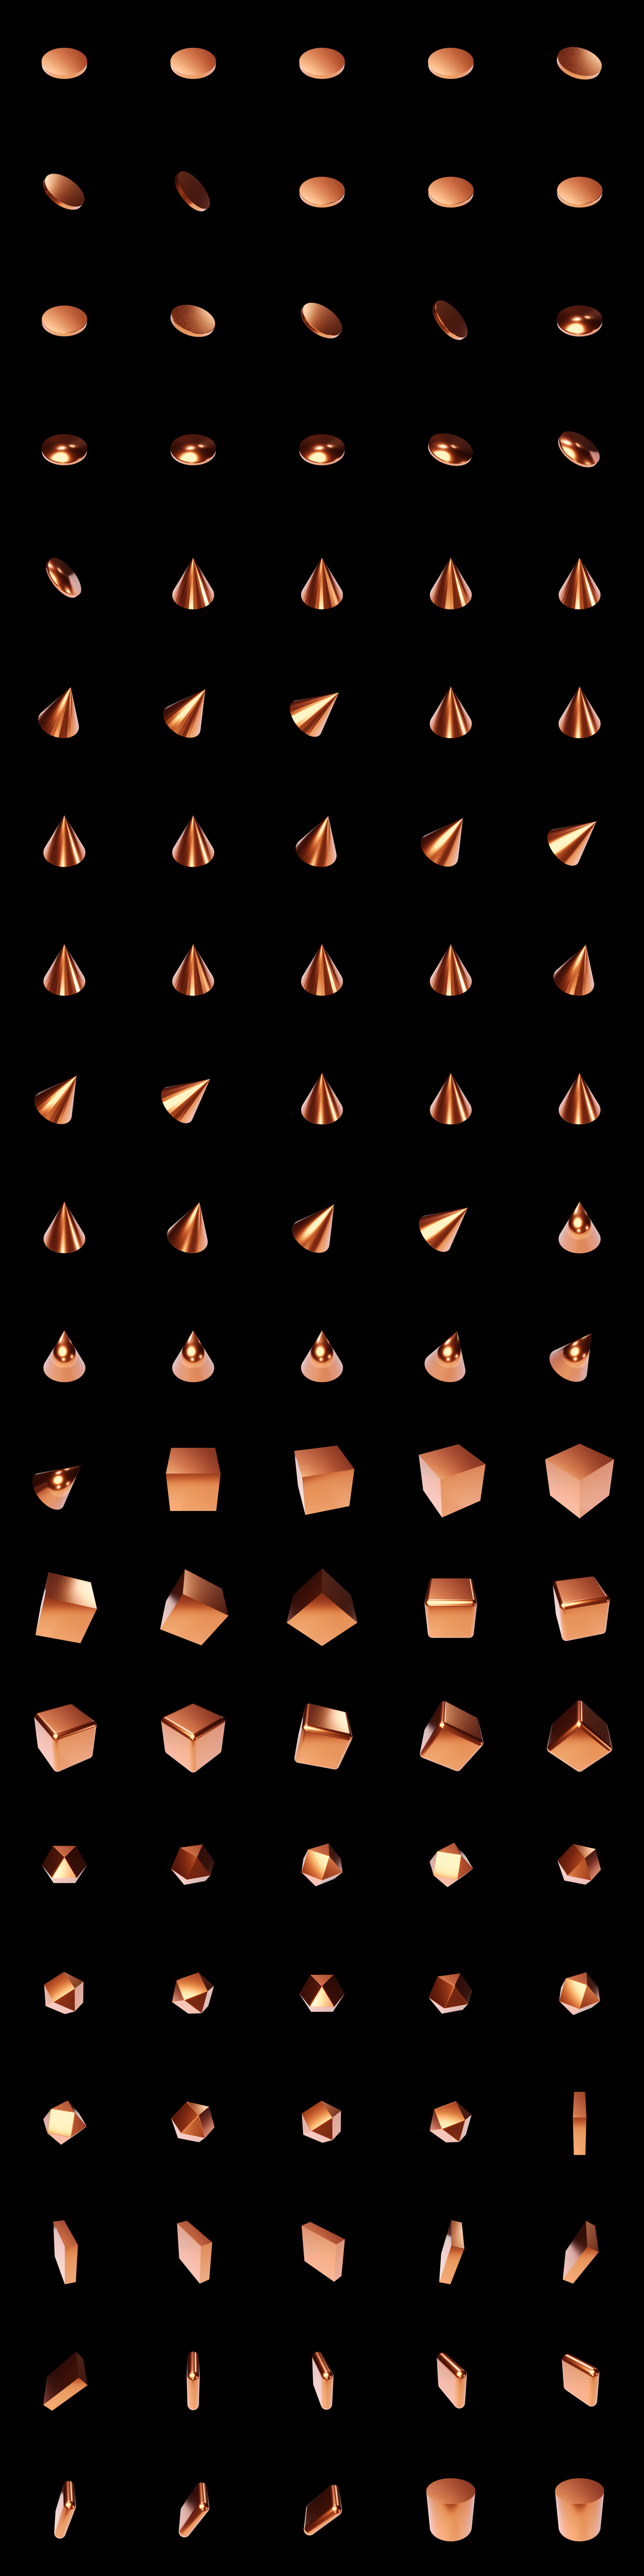 The Bundle - m.copper/a tile image 2